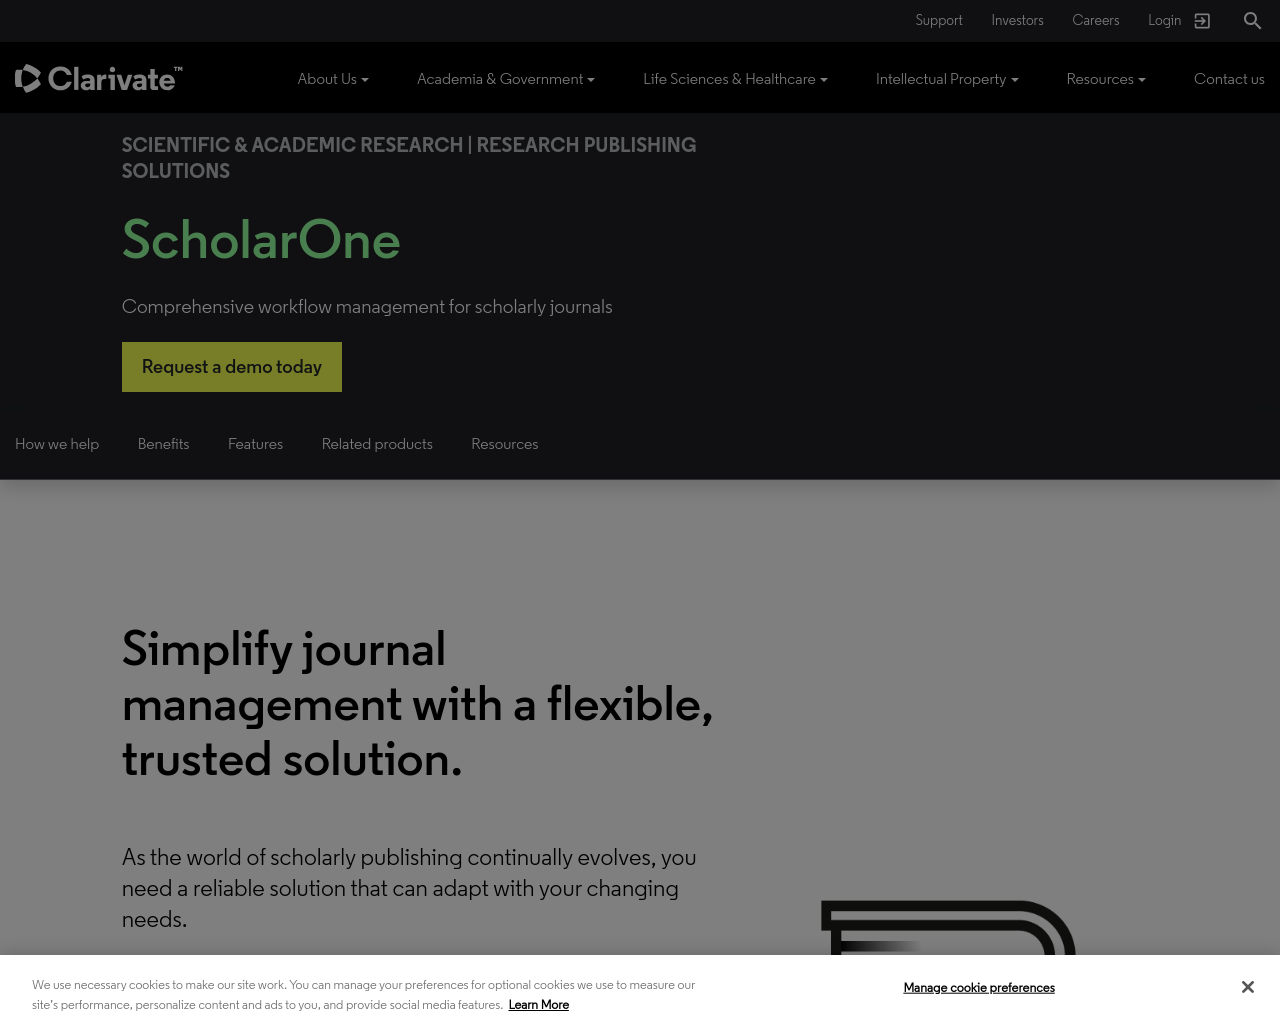 scholarone.com